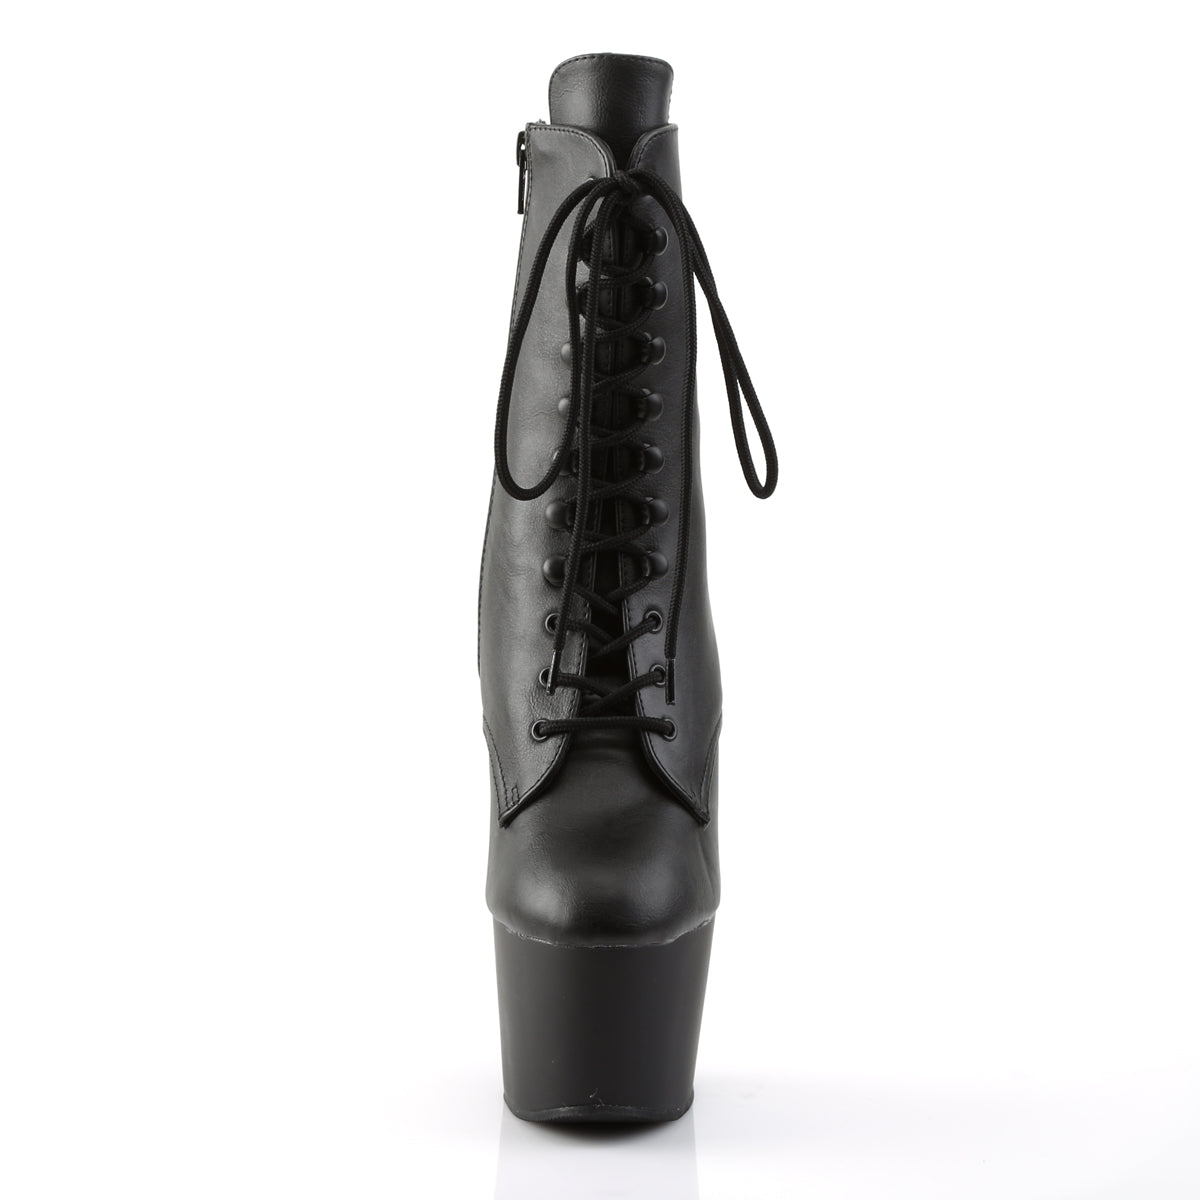 ADORE-1020 Black Mid Calf High Heel Boots